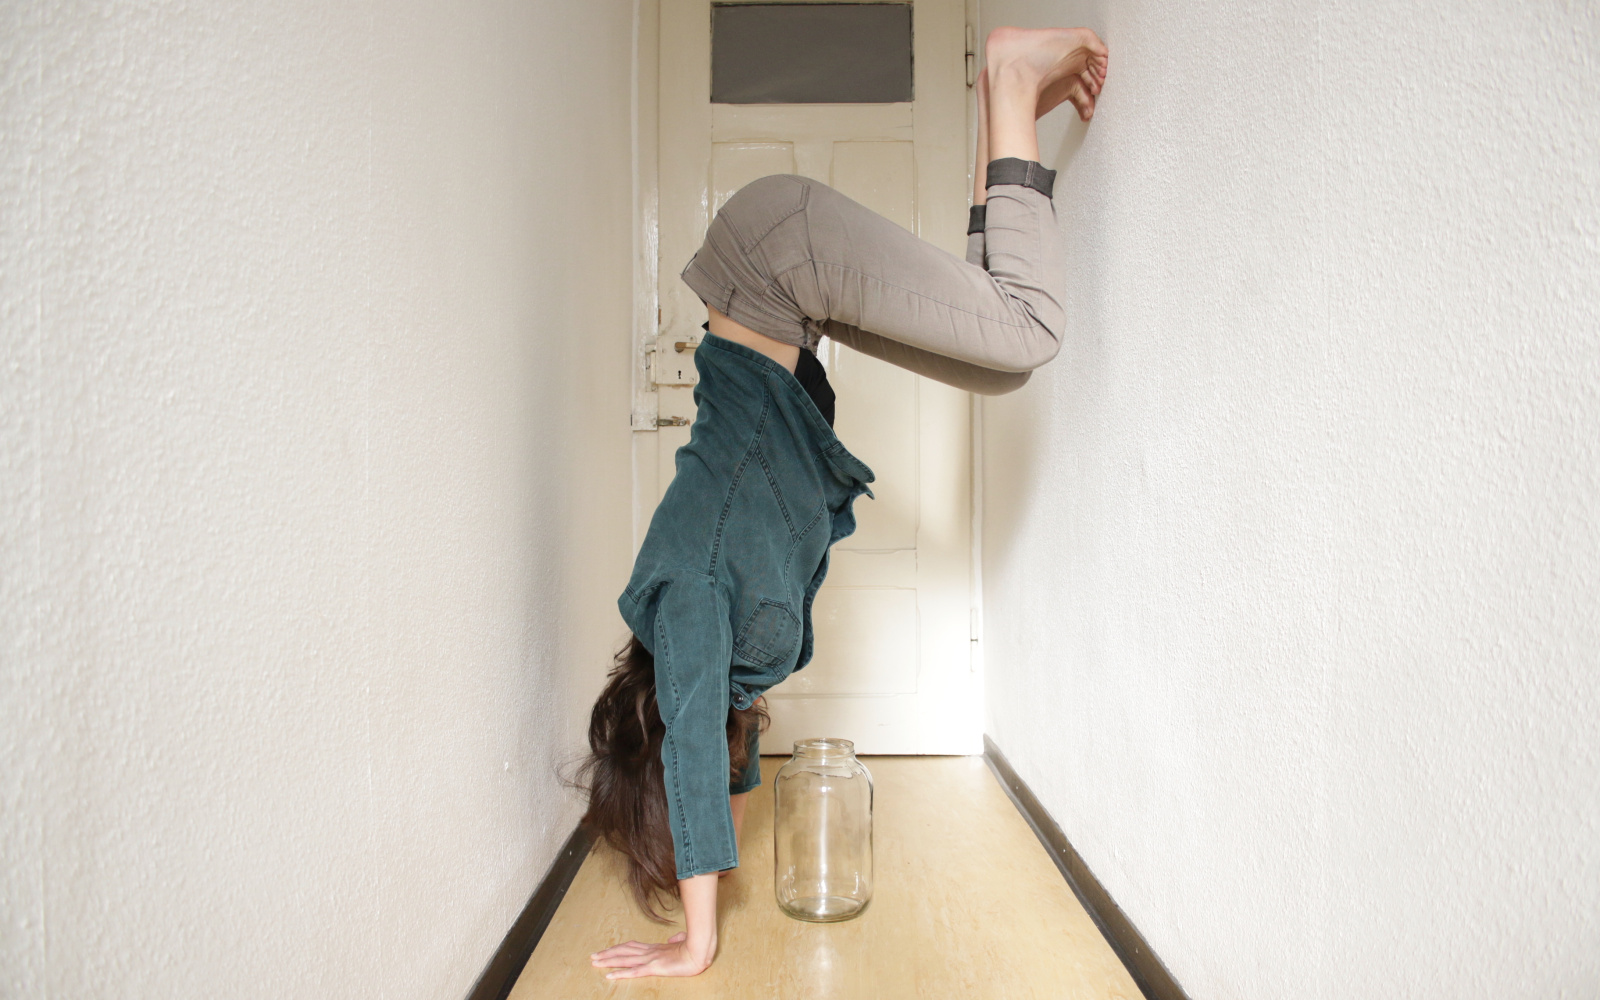 Eine Person macht einen Handstand an der Wand in einem schmalen Gang, unter ihr steht ein leeres Glasgefäß.